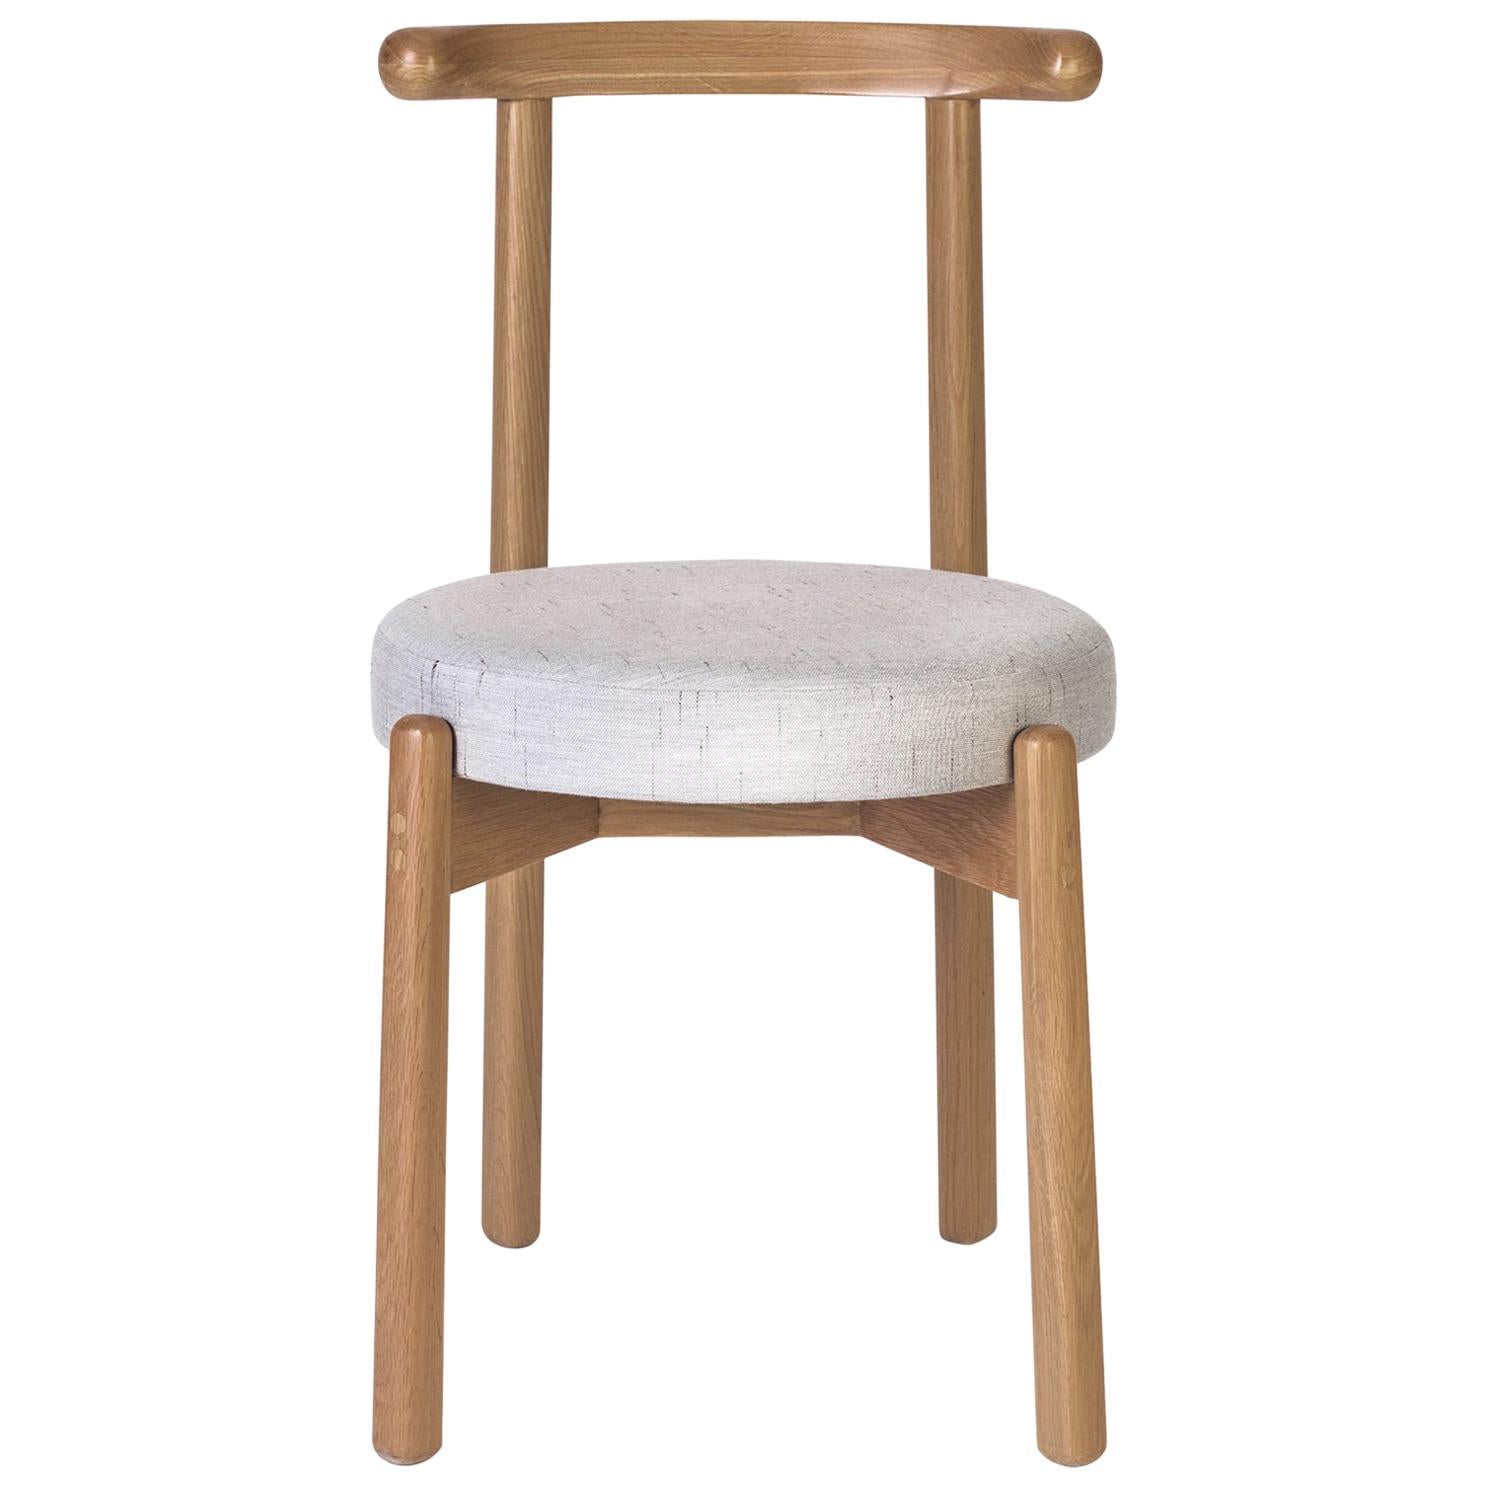 La simplicité de ce design fait de cette chaise une pièce polyvalente qui peut s'adapter à plusieurs types de tables à manger et d'espaces. La structure est en bois de chêne massif. Le revêtement des coussins peut être modifié sur demande selon les